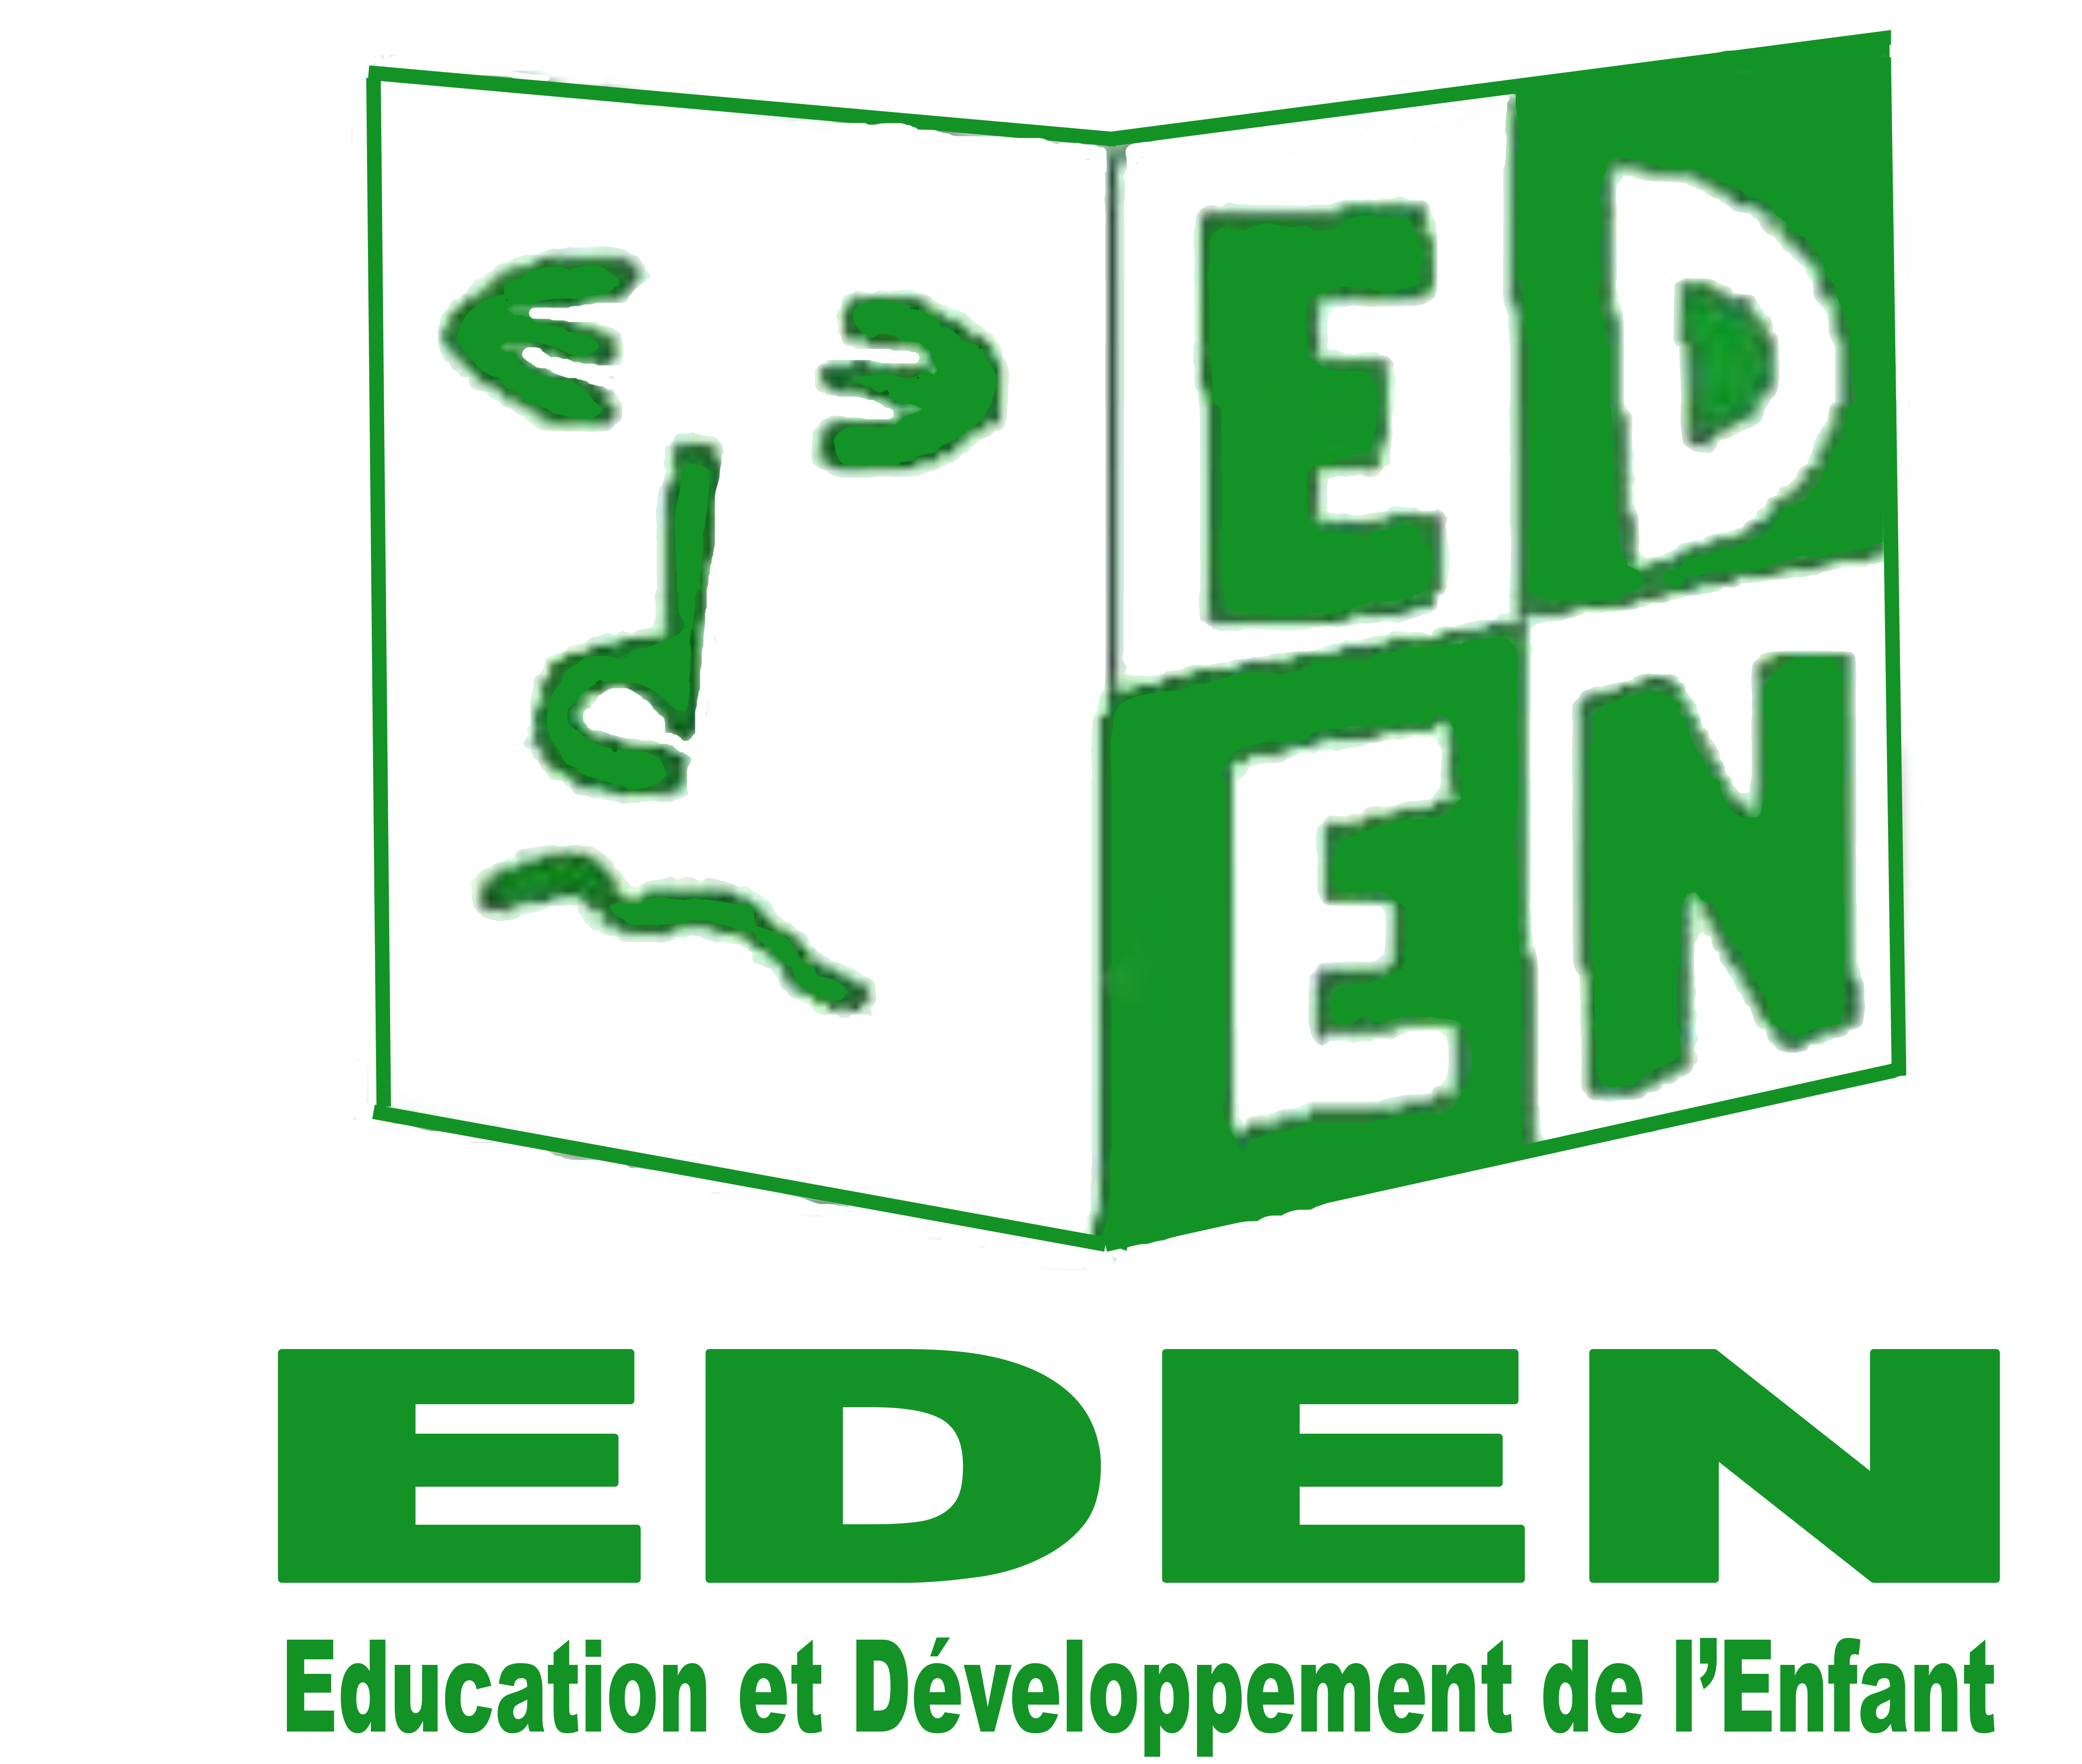 ONG EDUCATION ET DEVELOPPEMENT DE L'ENFANT(EDEN)